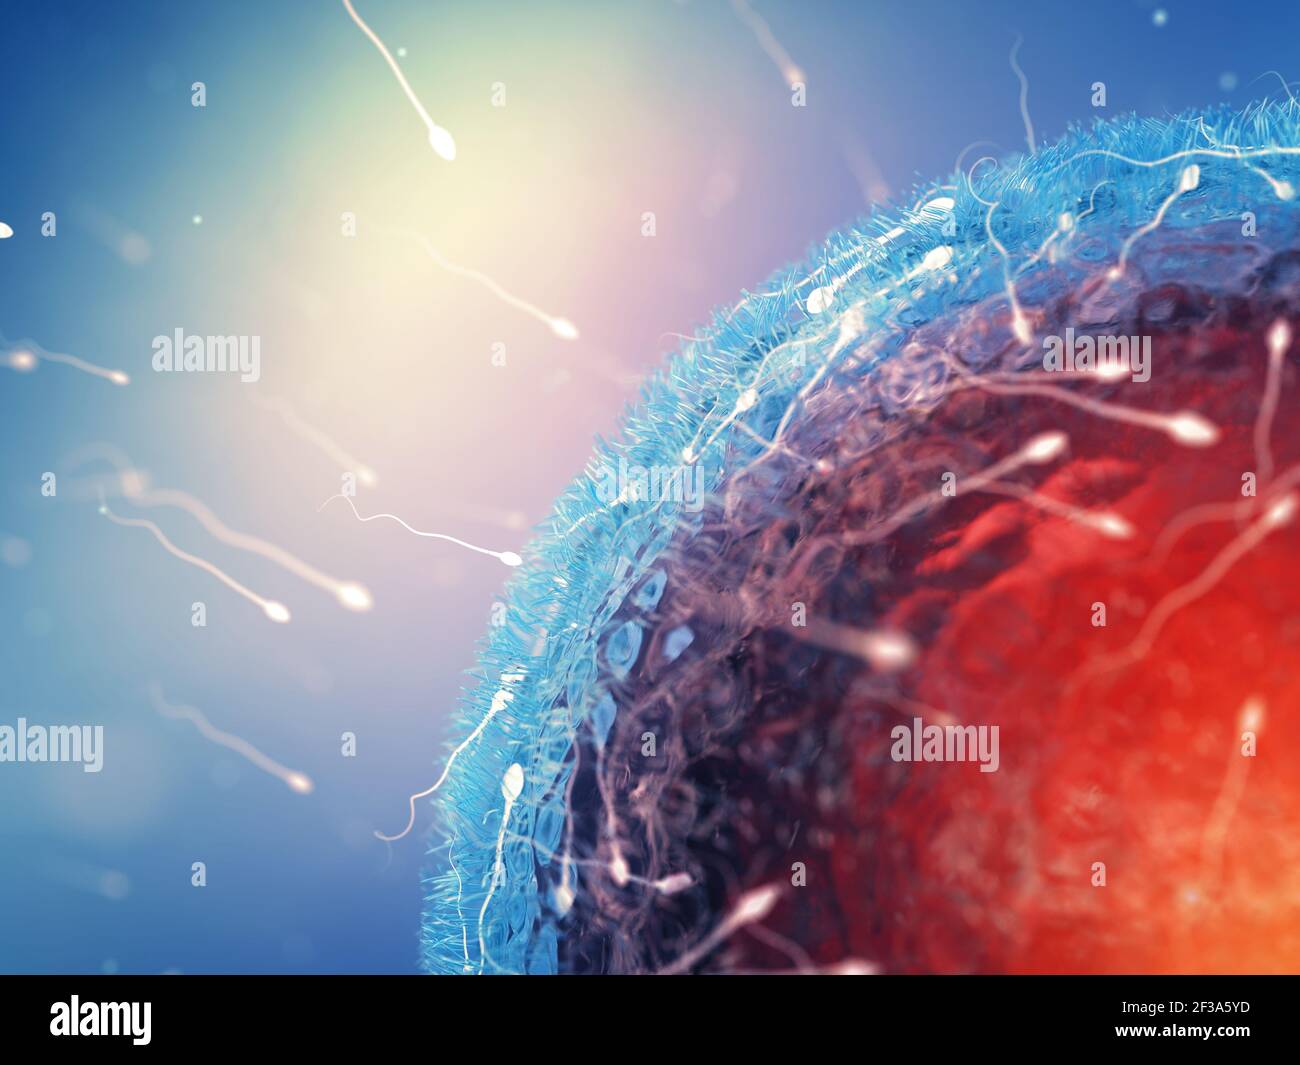 Sperm cells ( Spermatozoa ) fertilizing an egg cell ( Ovum ). Human fertilization concept. Stock Photo